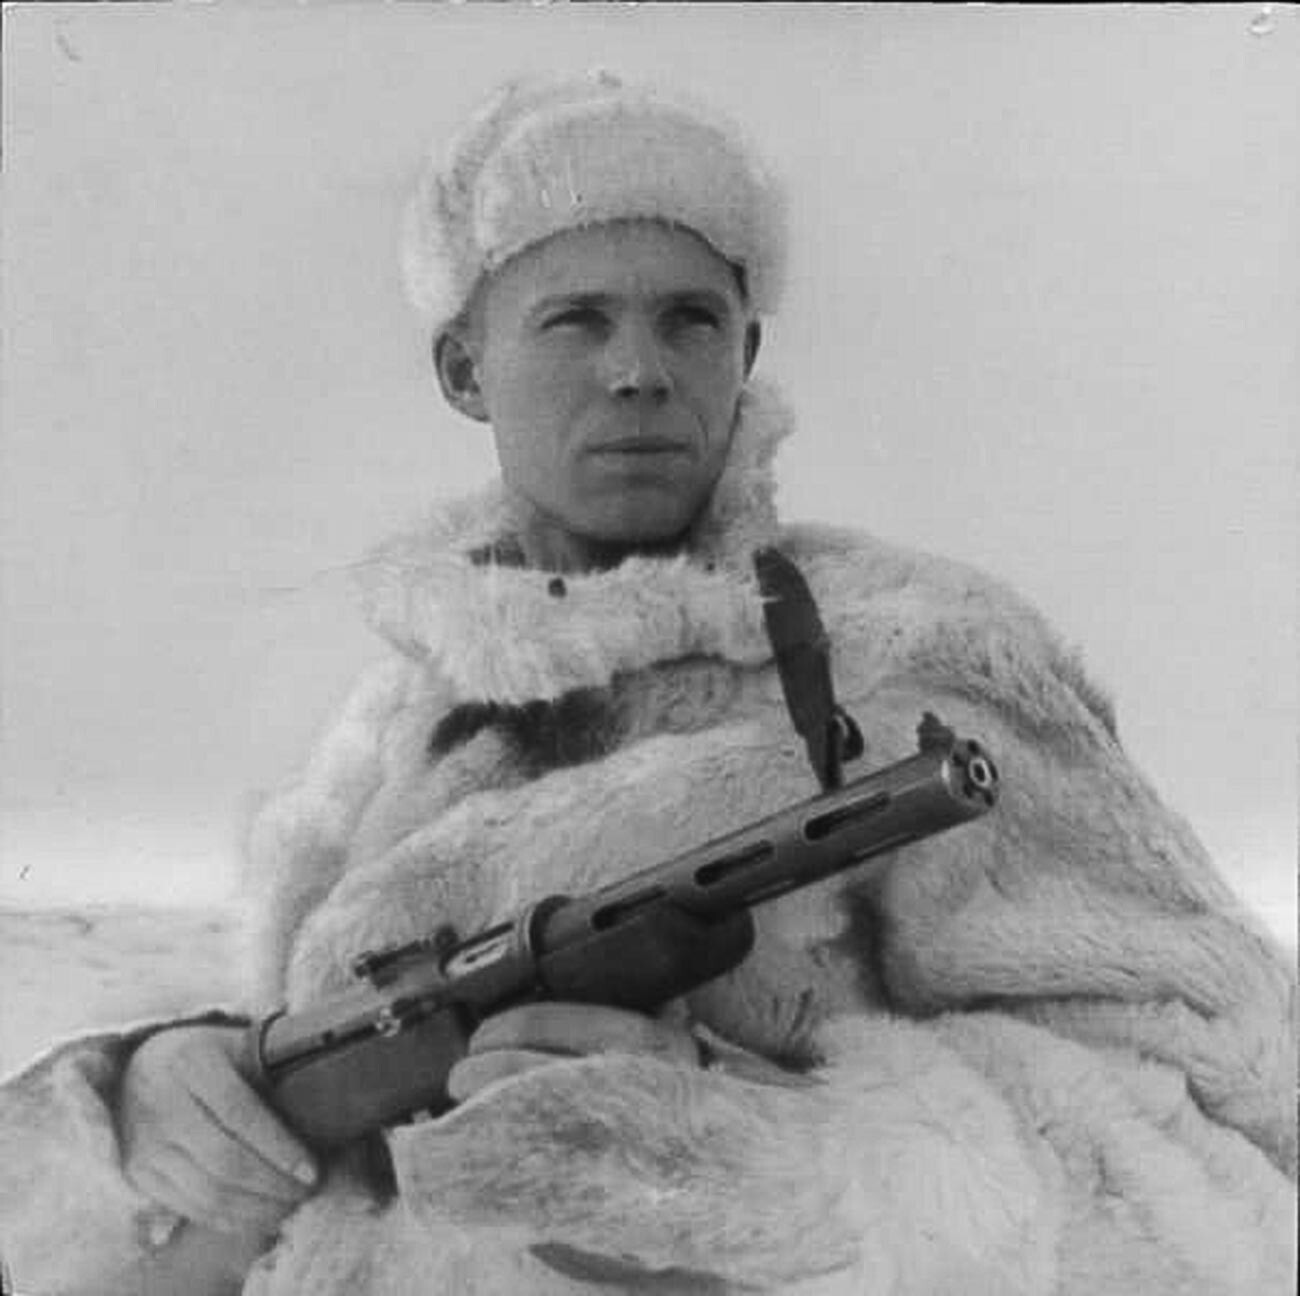 Un oficial de la inteligencia militar soviética, 1943, llevando una shuba